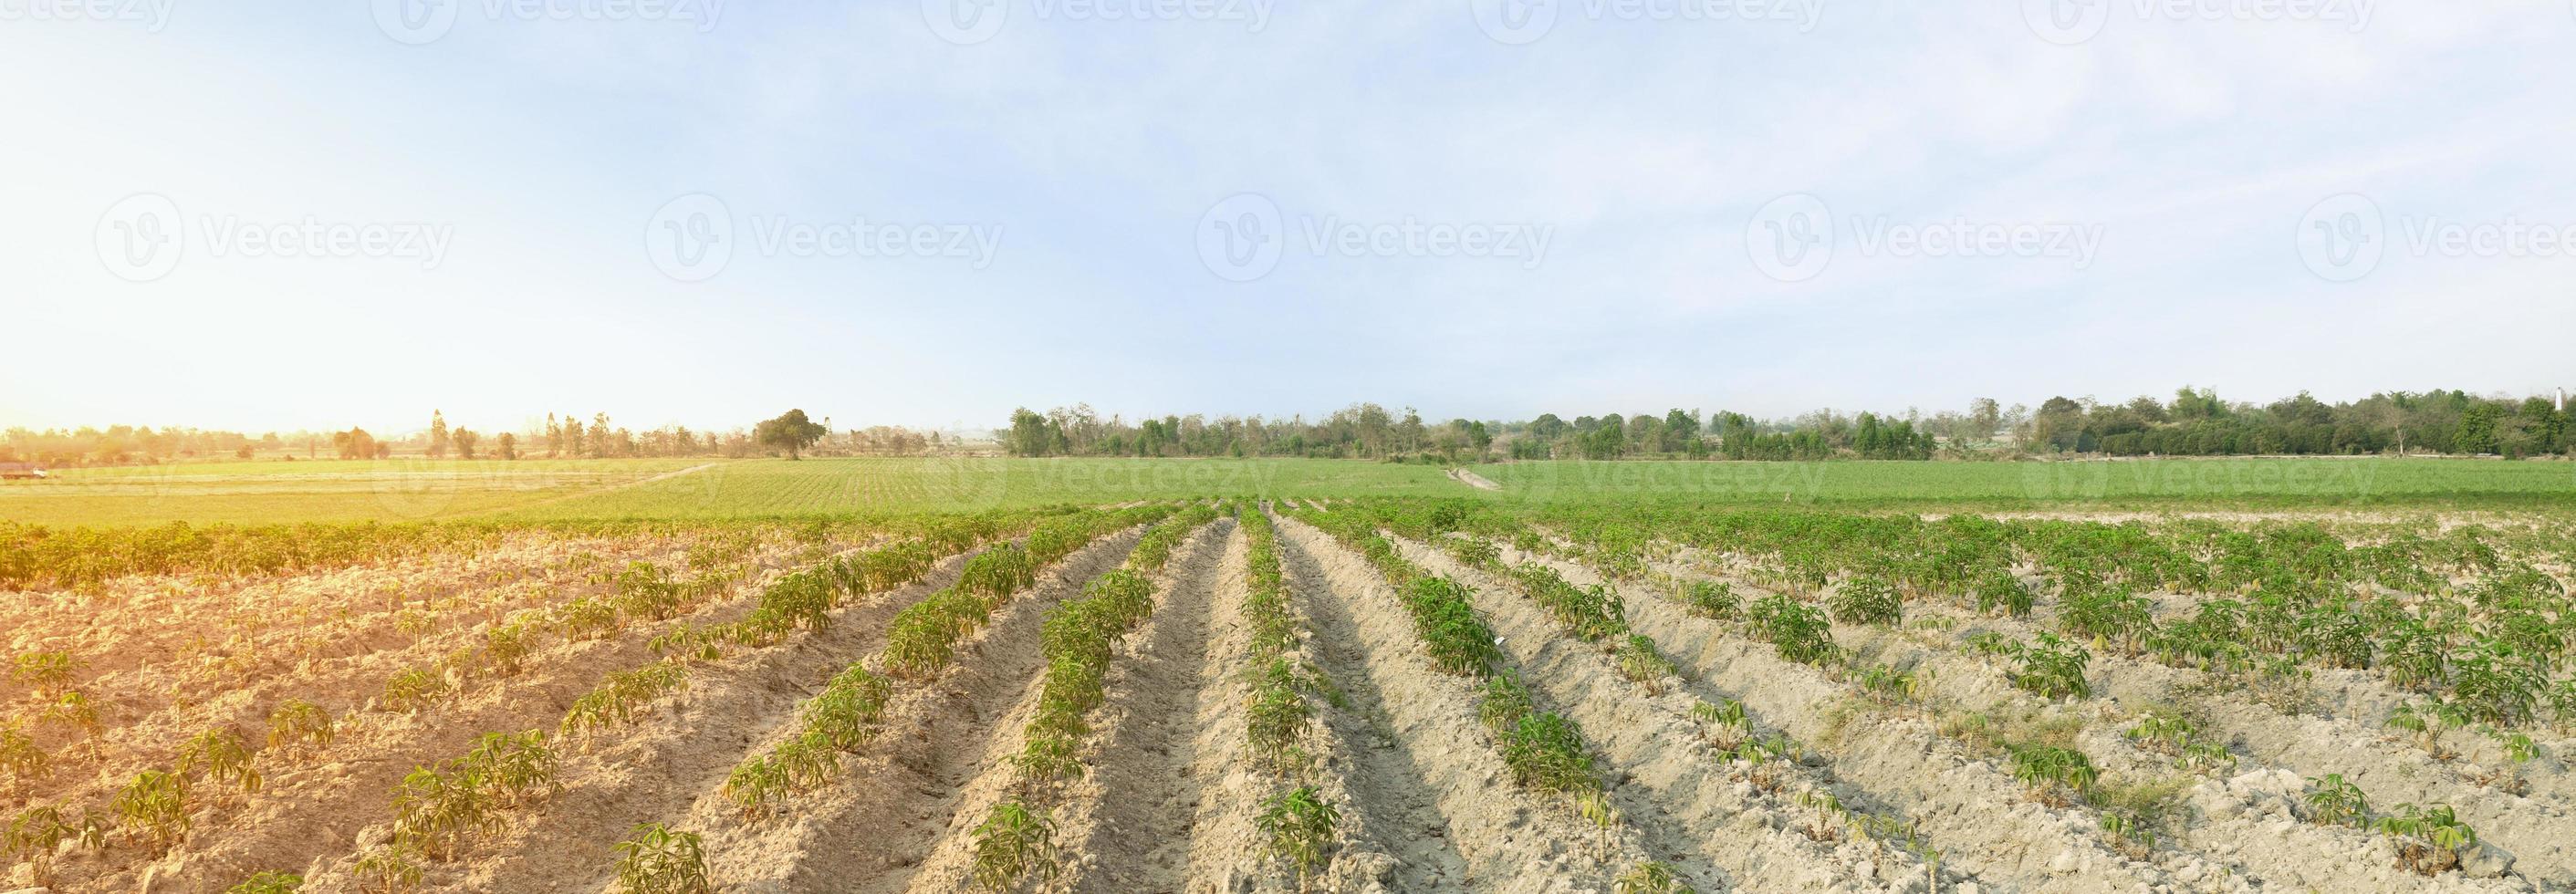 plantação de mandioca e céu. conceito de cultivo de mandioca foto